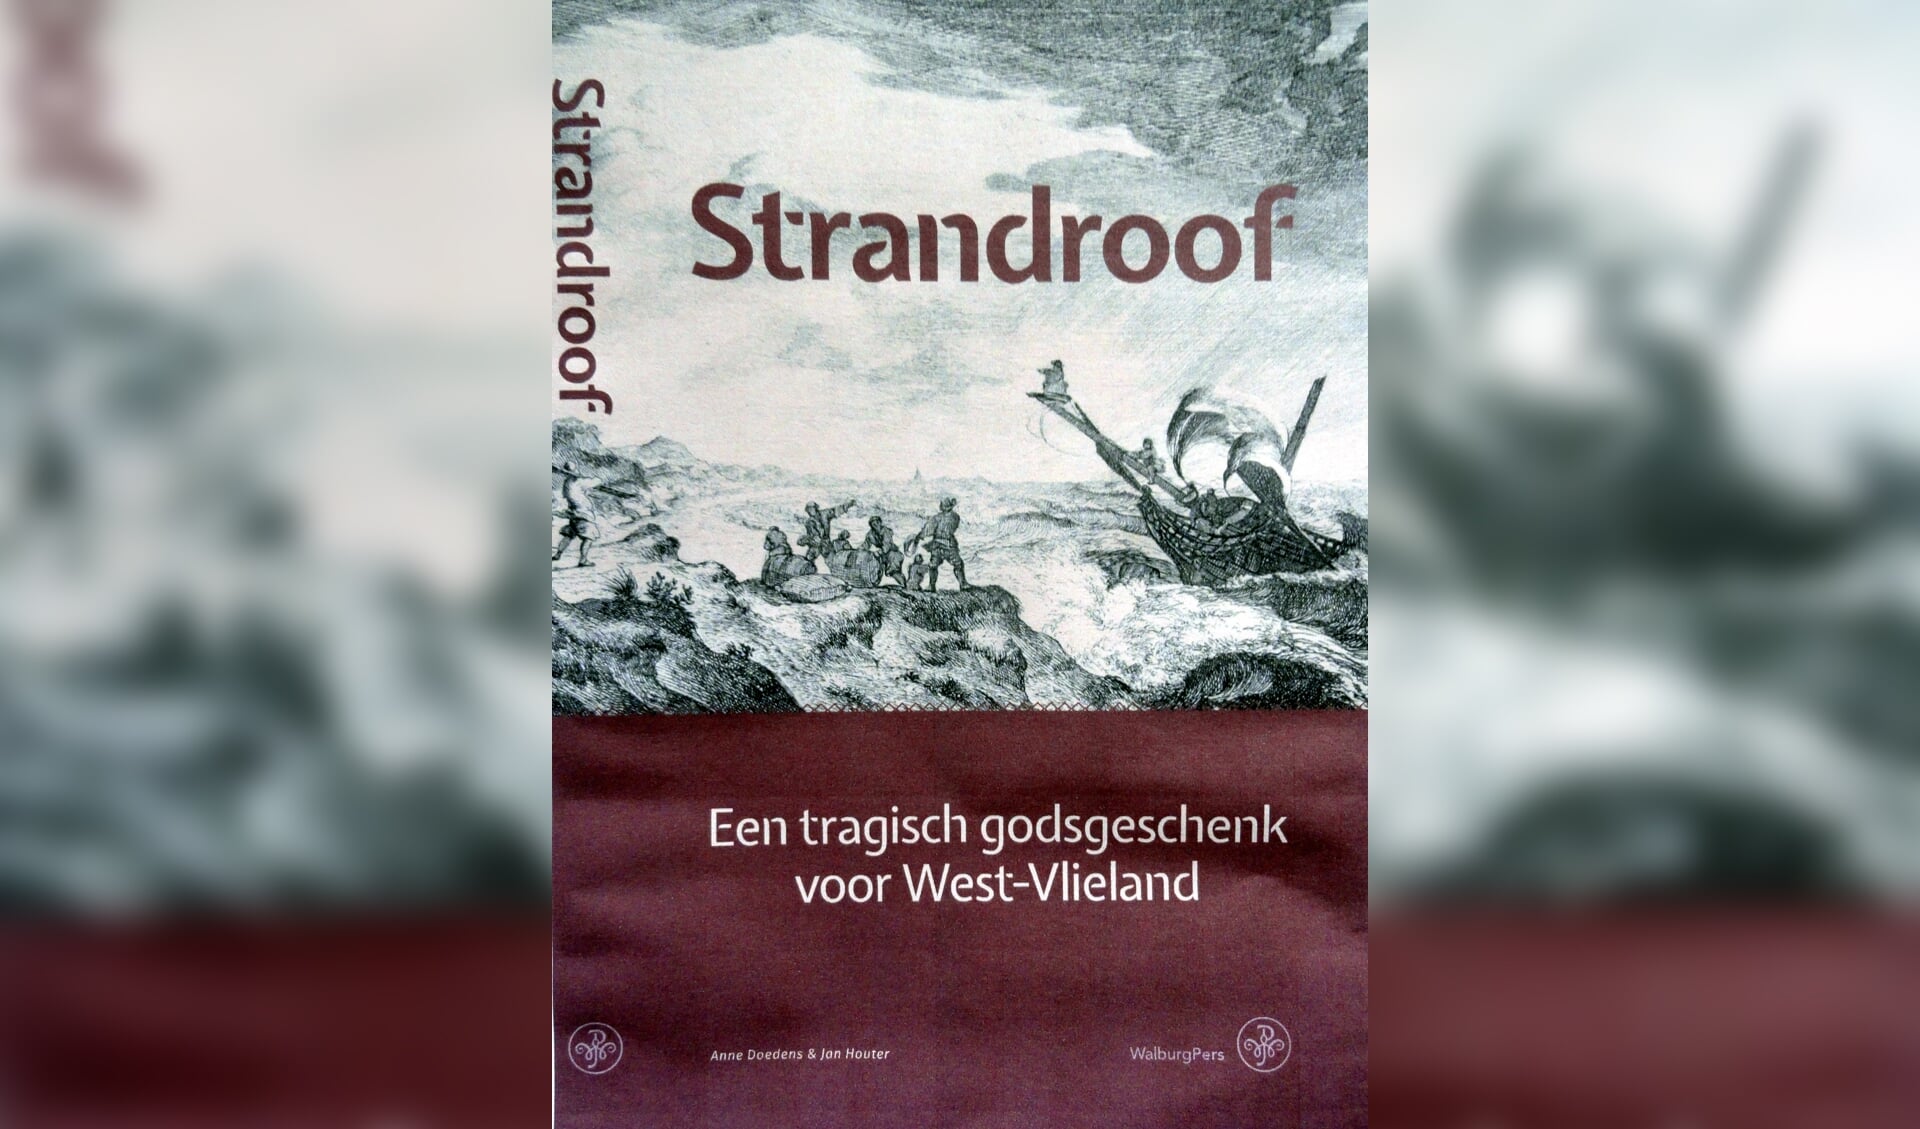 Strandroof is nog niet verschenen en is beschikbaar vanaf 16 juni.